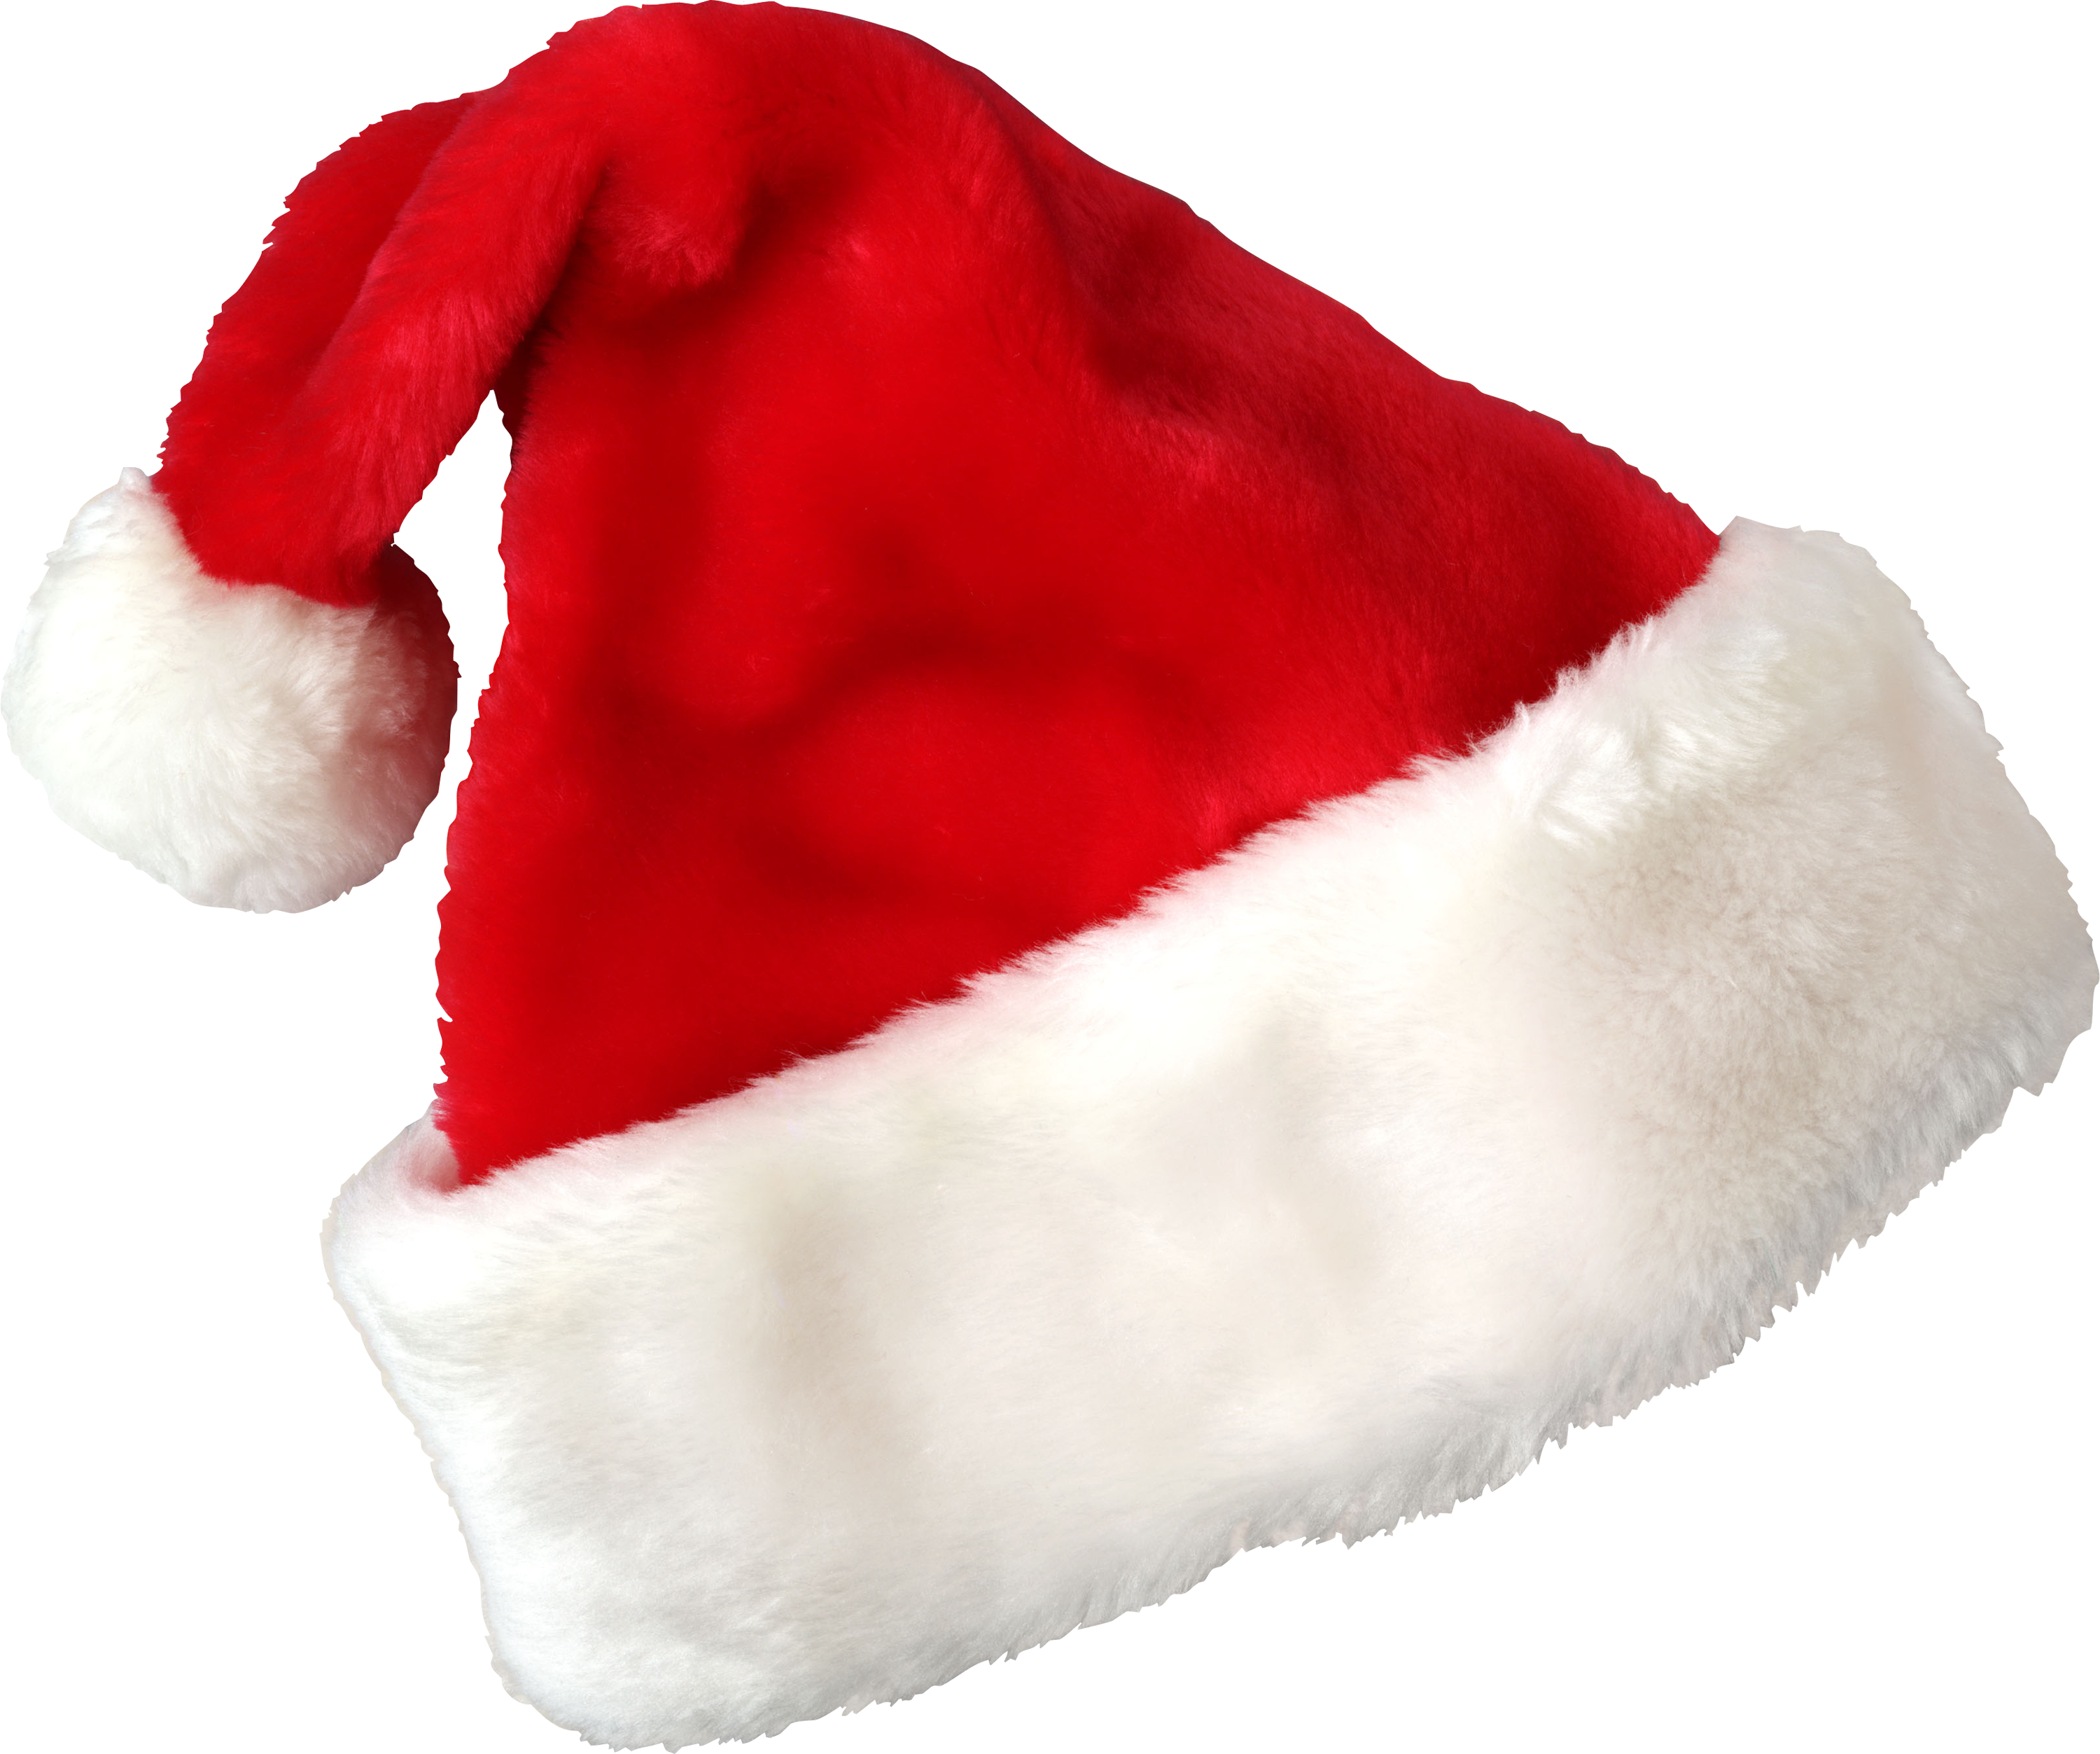 Święty Mikołaj w czerwonym kapeluszu